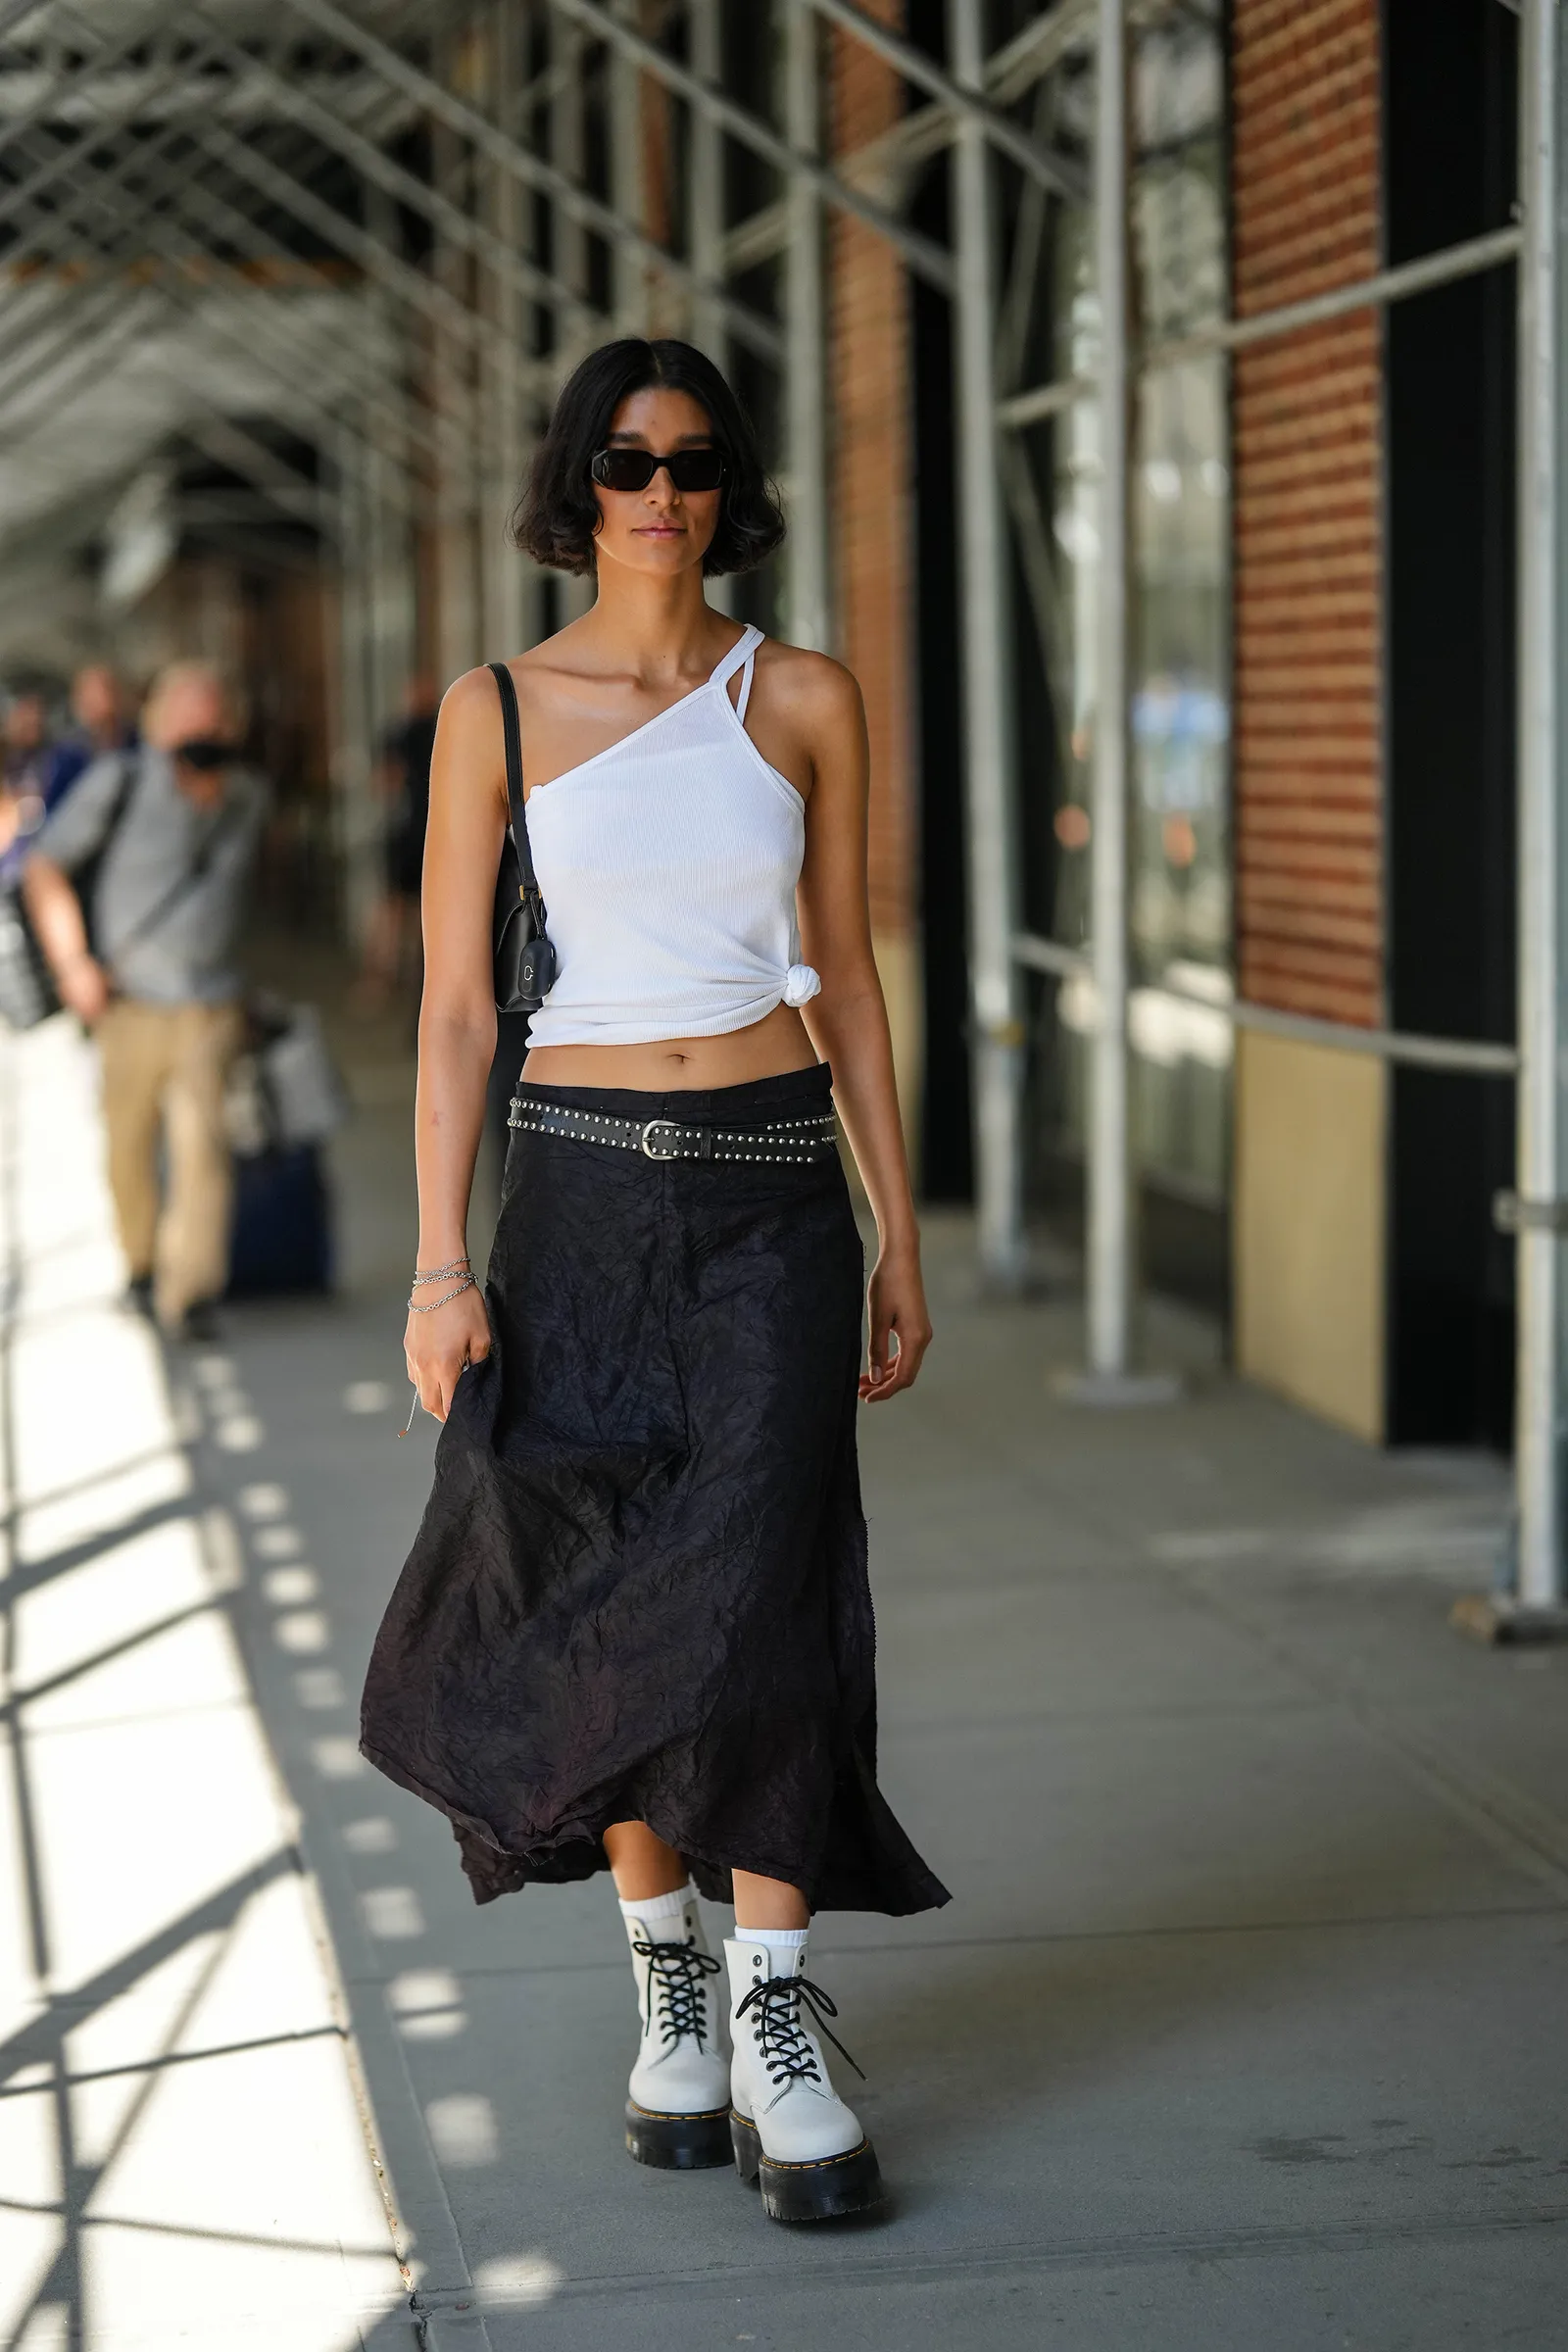 Czarna spódnica midi do botków na platformie zapewni nonszalancką stylizację. (Fot. Getty Images)